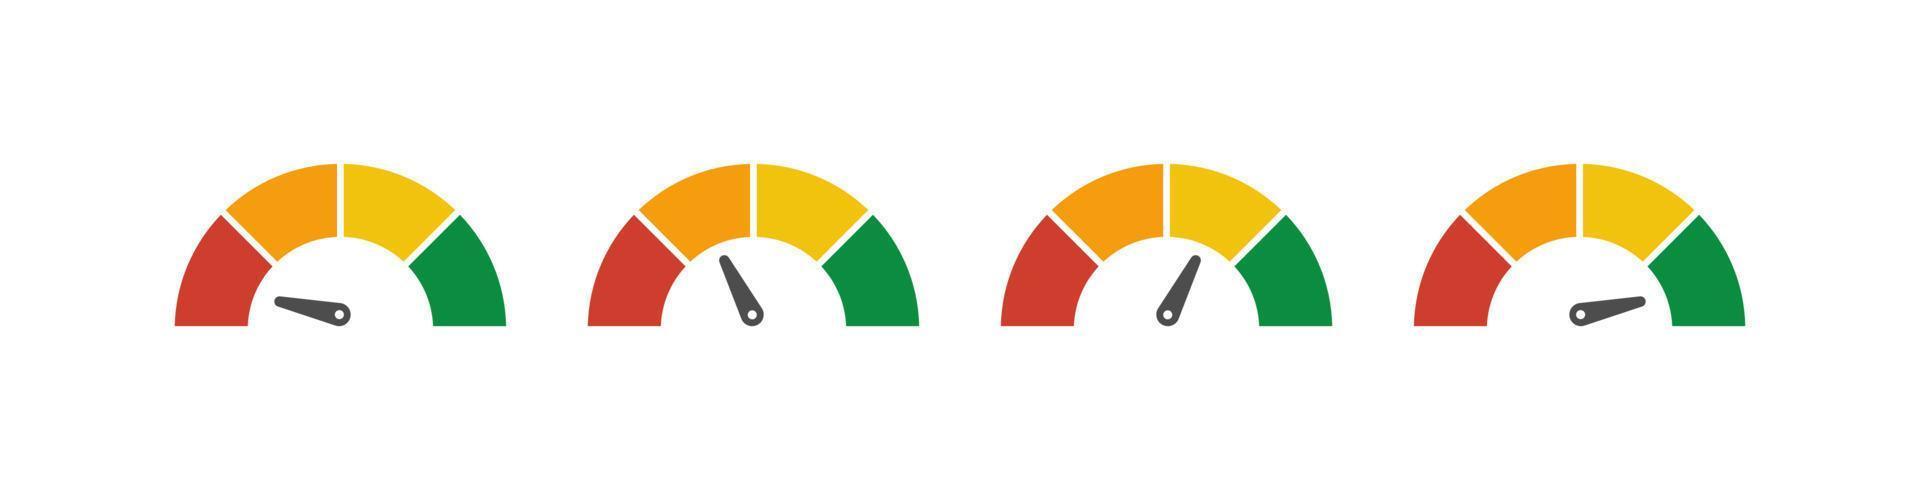 conjunto de medidor de velocímetro vetorial com seta para painel com indicadores verdes, amarelos e vermelhos. calibre do tacômetro. níveis baixo, médio, alto e de risco. bitcoin índice de medo e ganância criptomoeda vetor